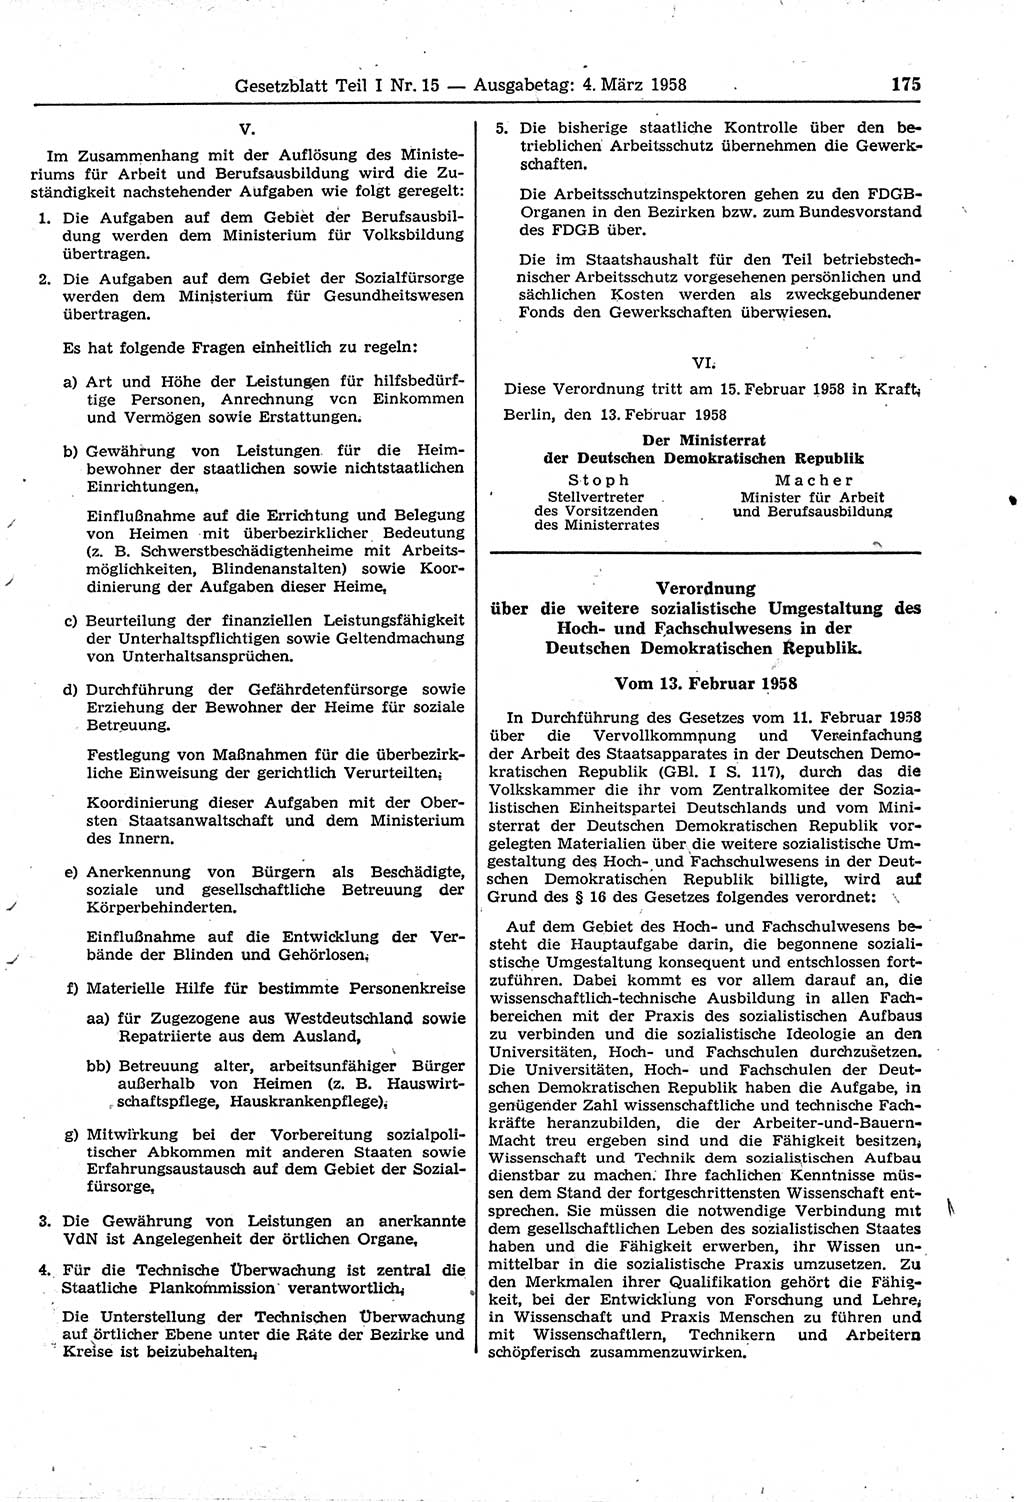 Gesetzblatt (GBl.) der Deutschen Demokratischen Republik (DDR) Teil Ⅰ 1958, Seite 175 (GBl. DDR Ⅰ 1958, S. 175)